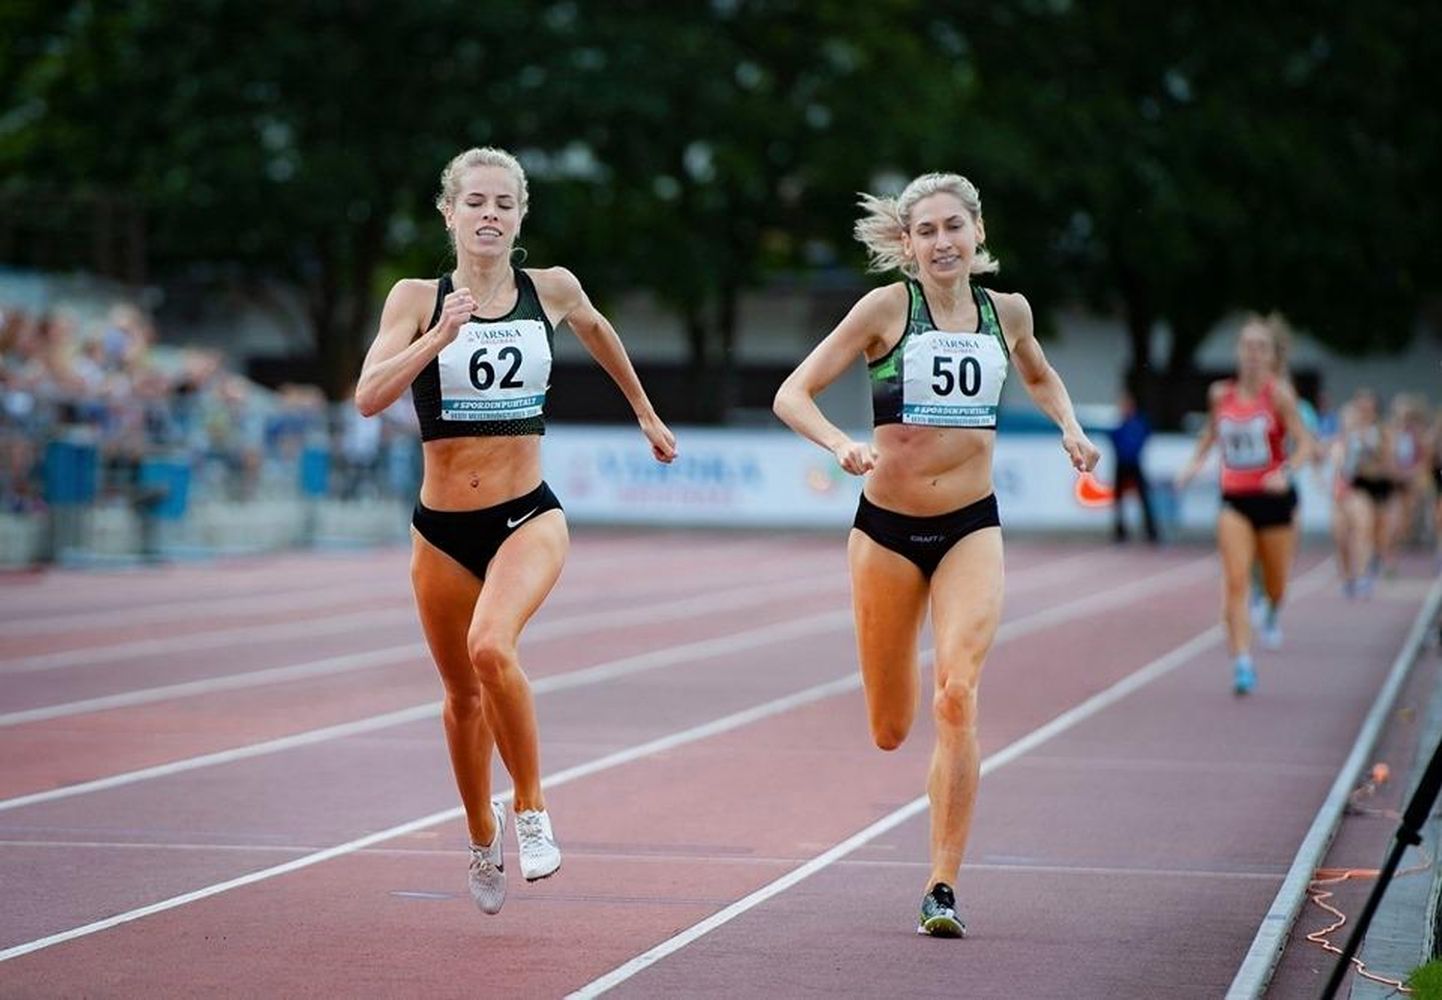 Eesti naiskeskmaajooksjate paremikku kuuluval Kelly Nevolihhinil (vasakul) avaneb võimalus startida augustis toimuvatel Eesti kergejõustiku meistrivõistlustel. Enne seda tuleb vormi timmida ja võistelda väiksematel mõõduvõttudel.